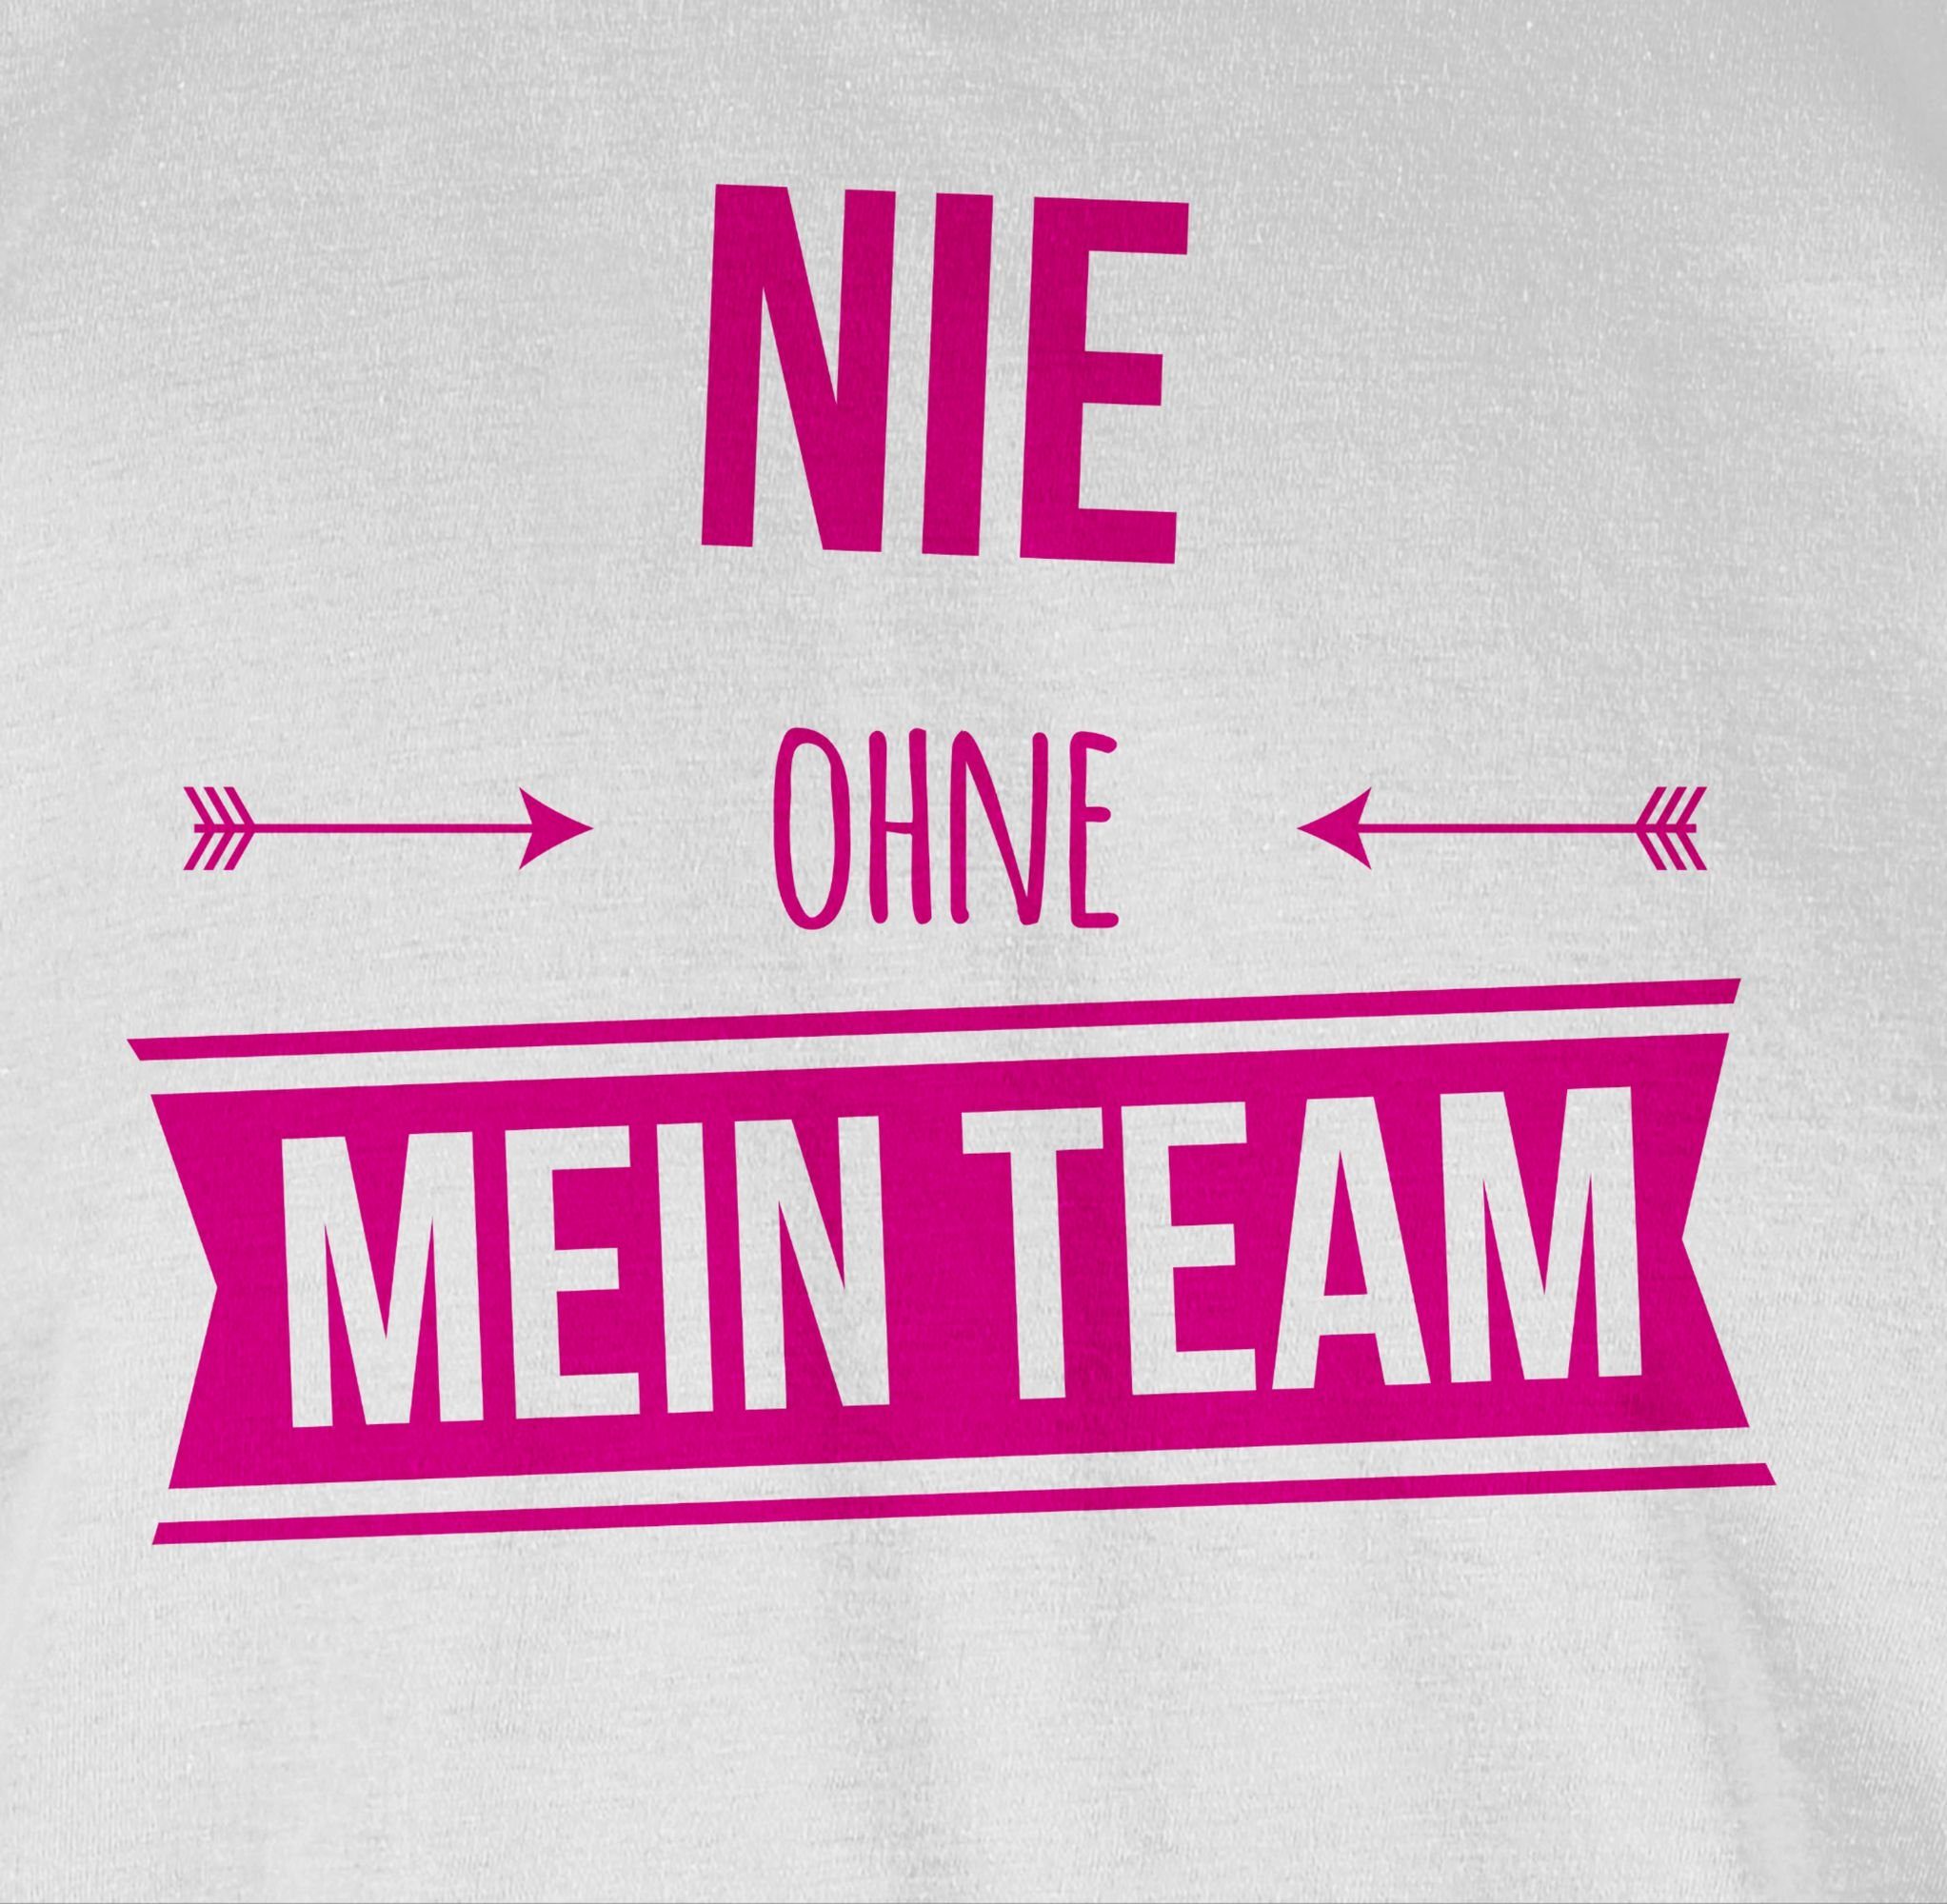 Sprüche Pink T-Shirt mein Team Nie Statement ohne Shirtracer 2 Weiß